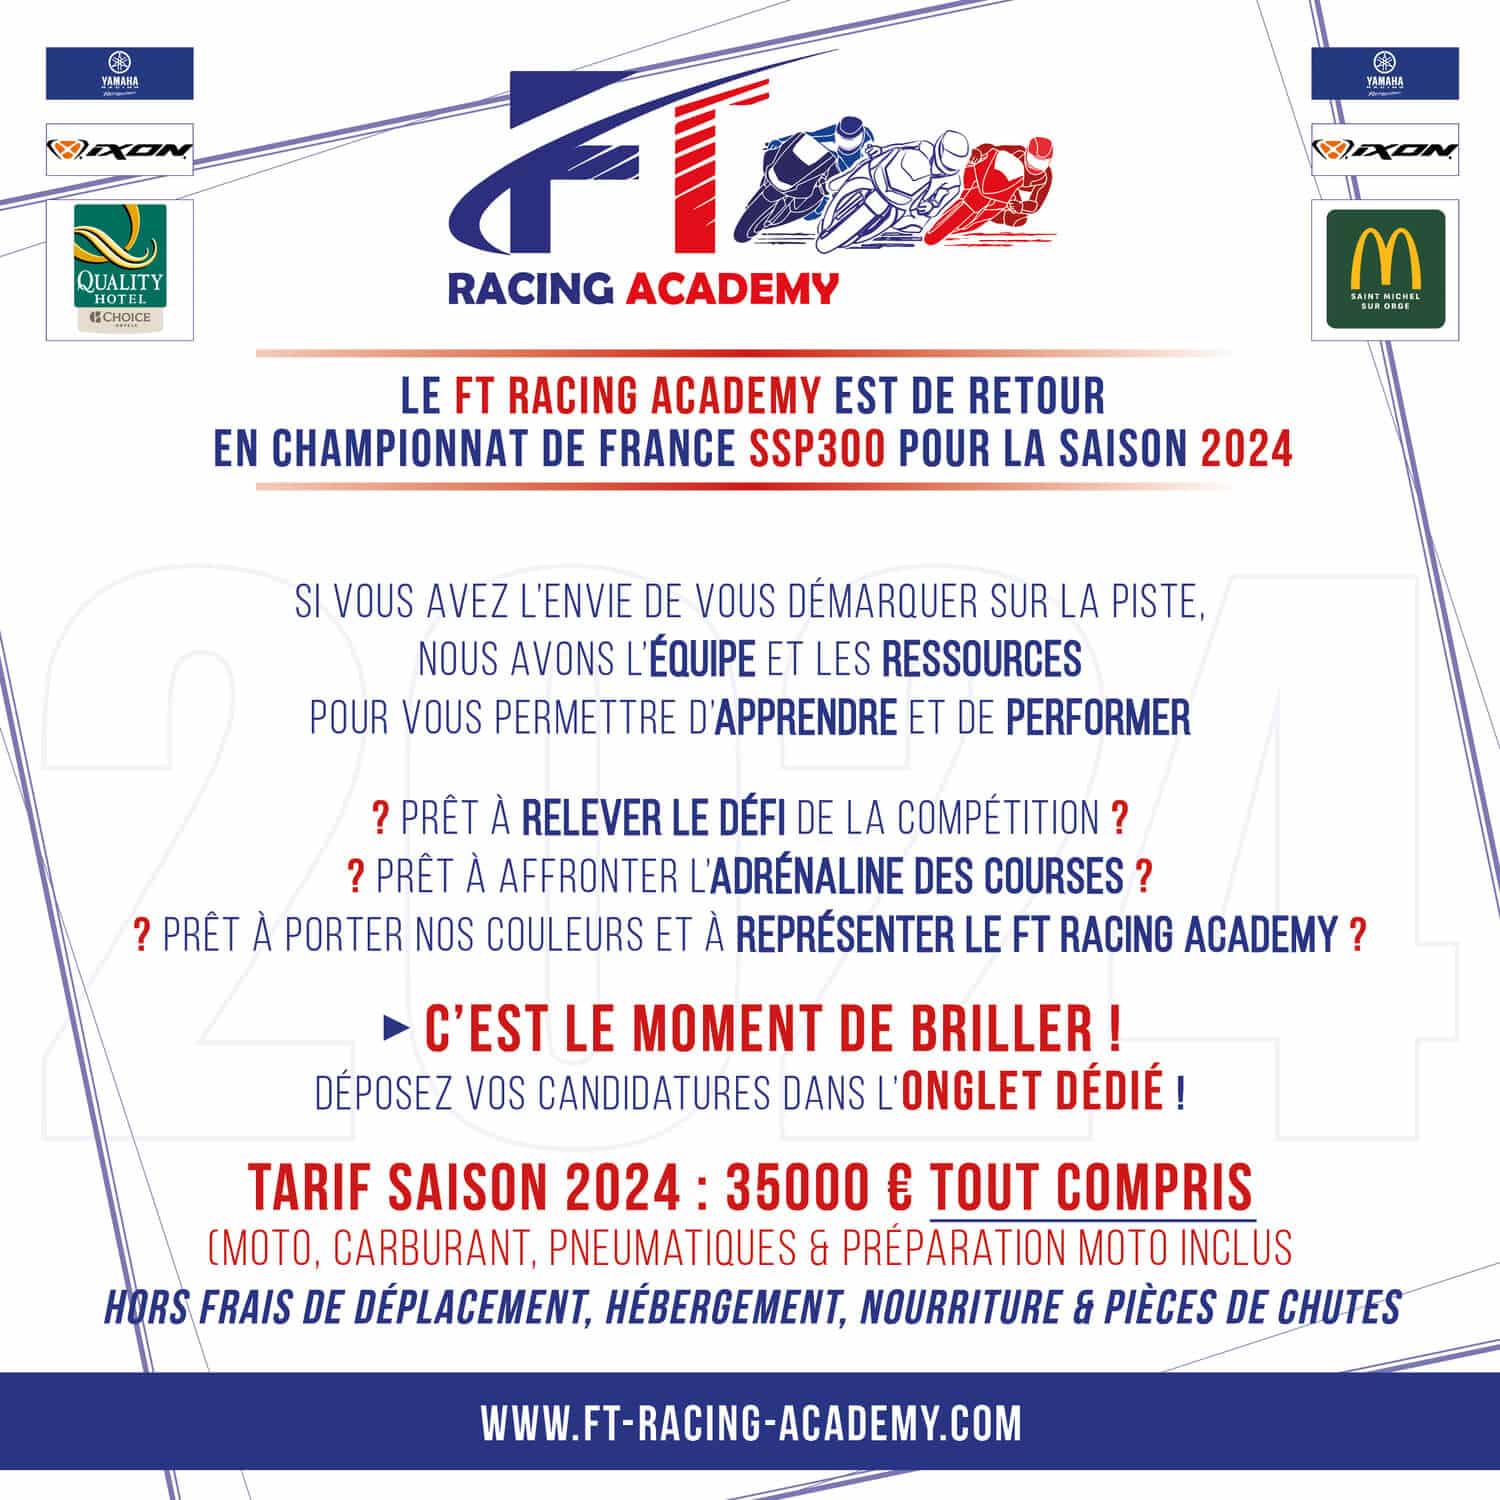 Le programme de la saison 2023 de FT Racing Academy